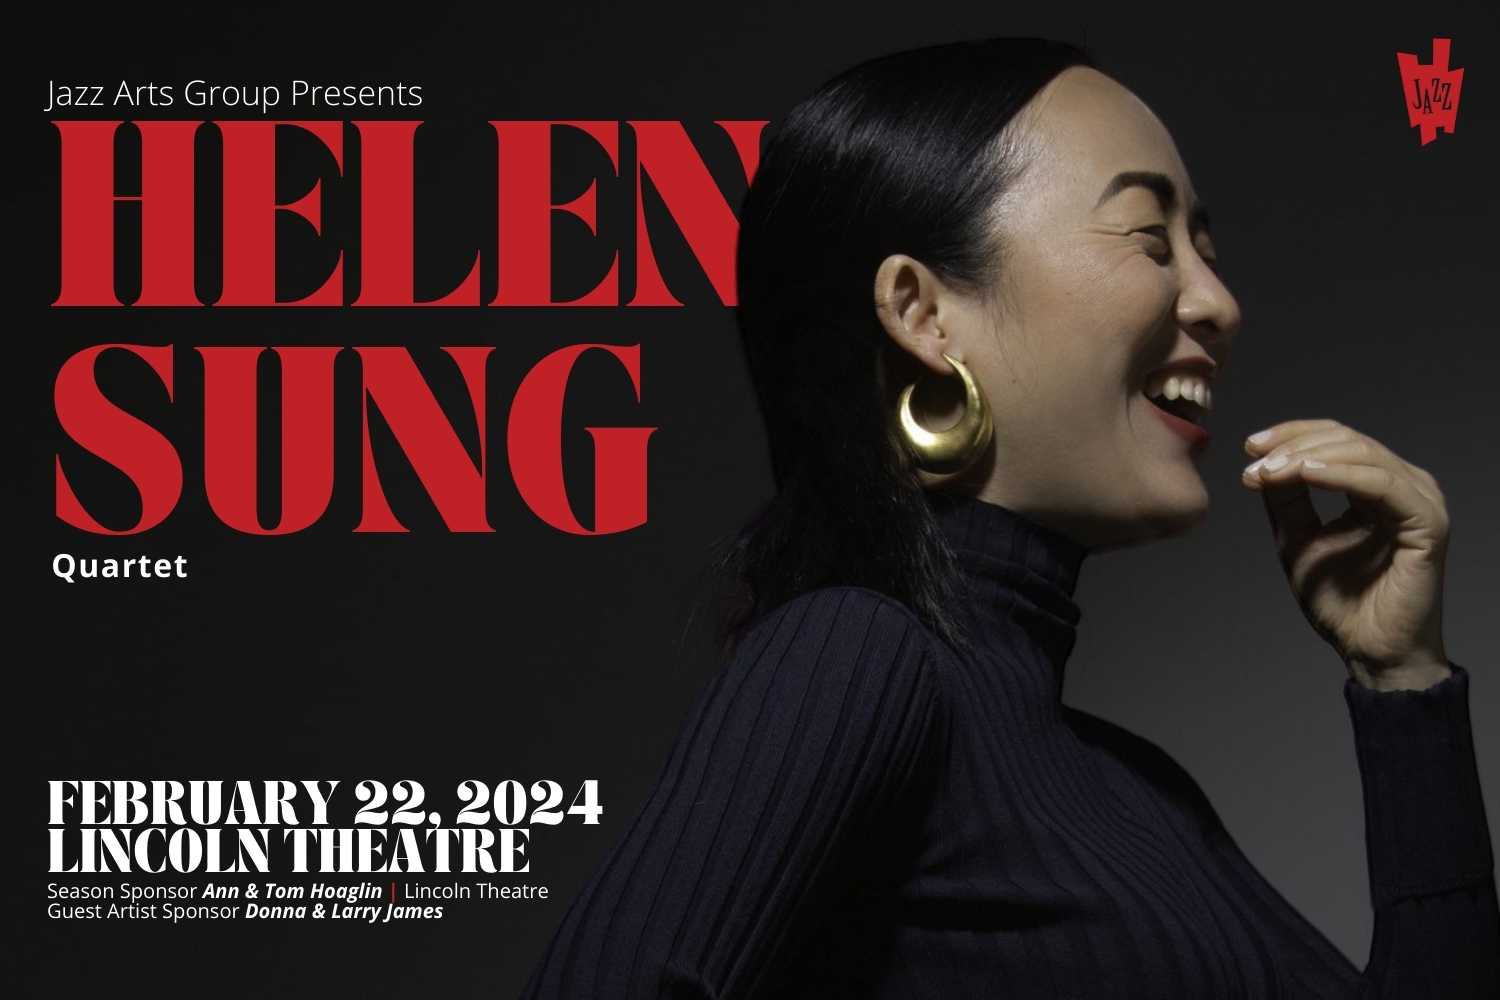 The Helen Sung Quartet